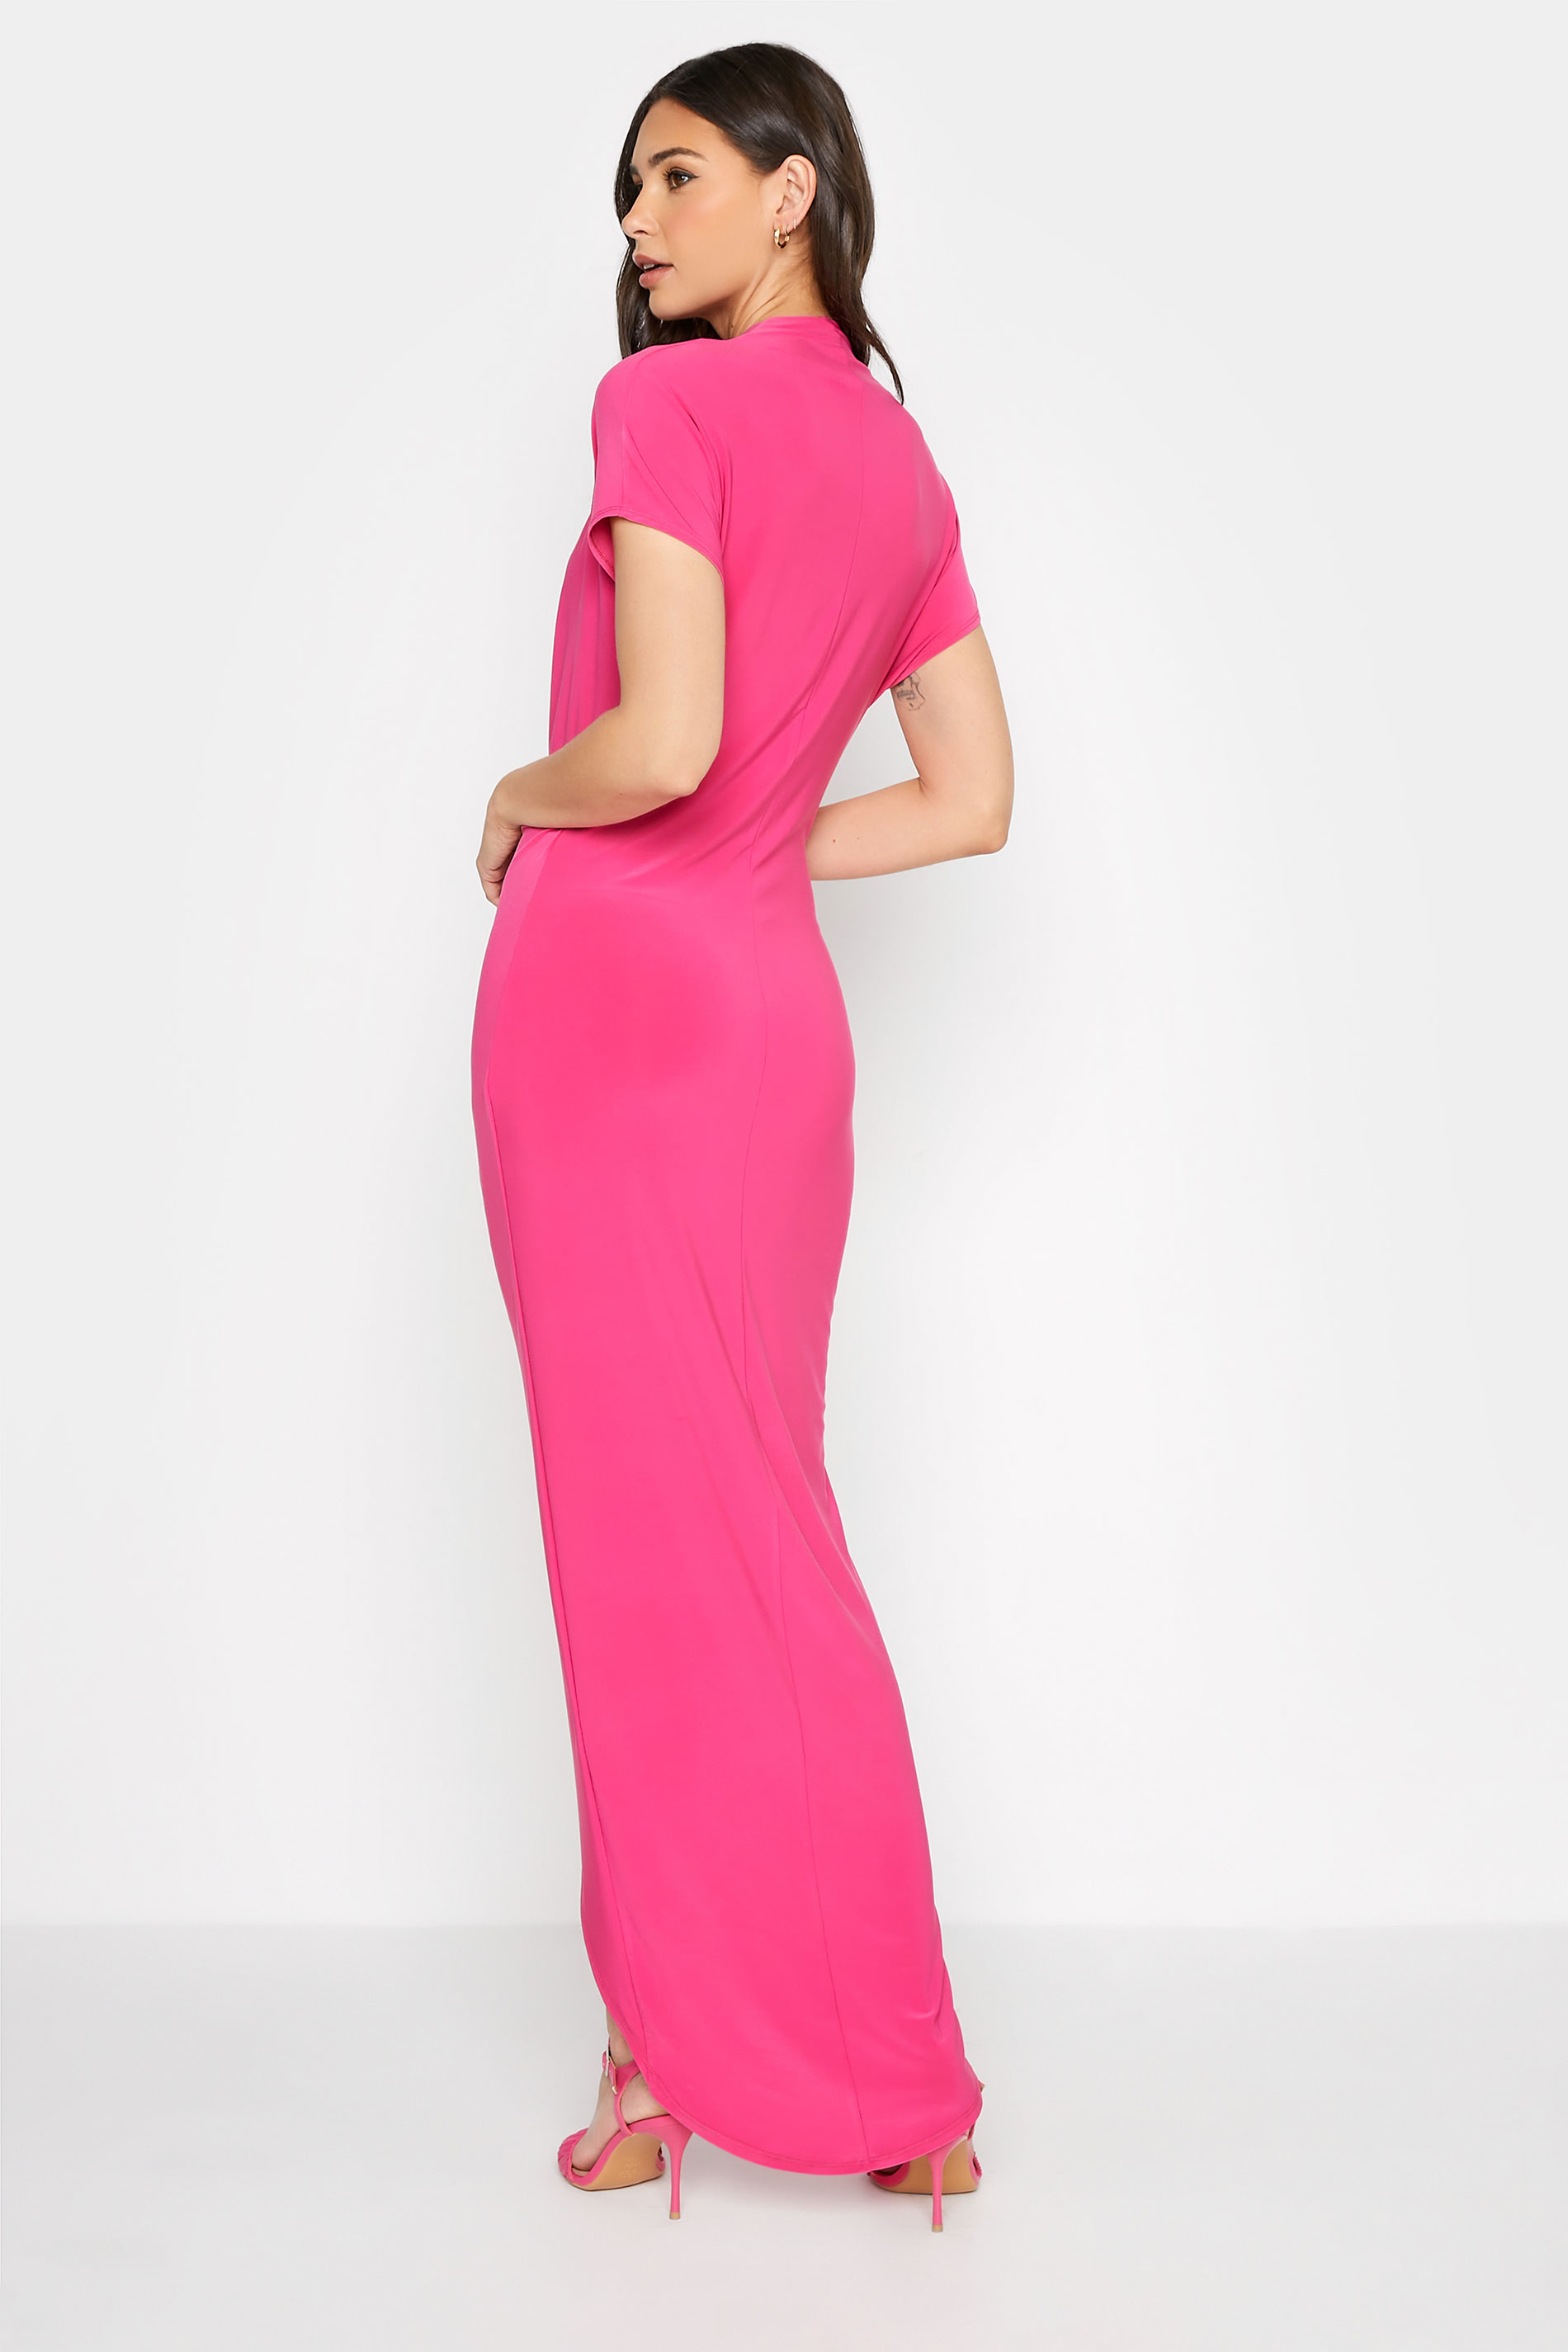 LTS Tall Women's Hot Pink Wrap Dress | Long Tall Sally 3